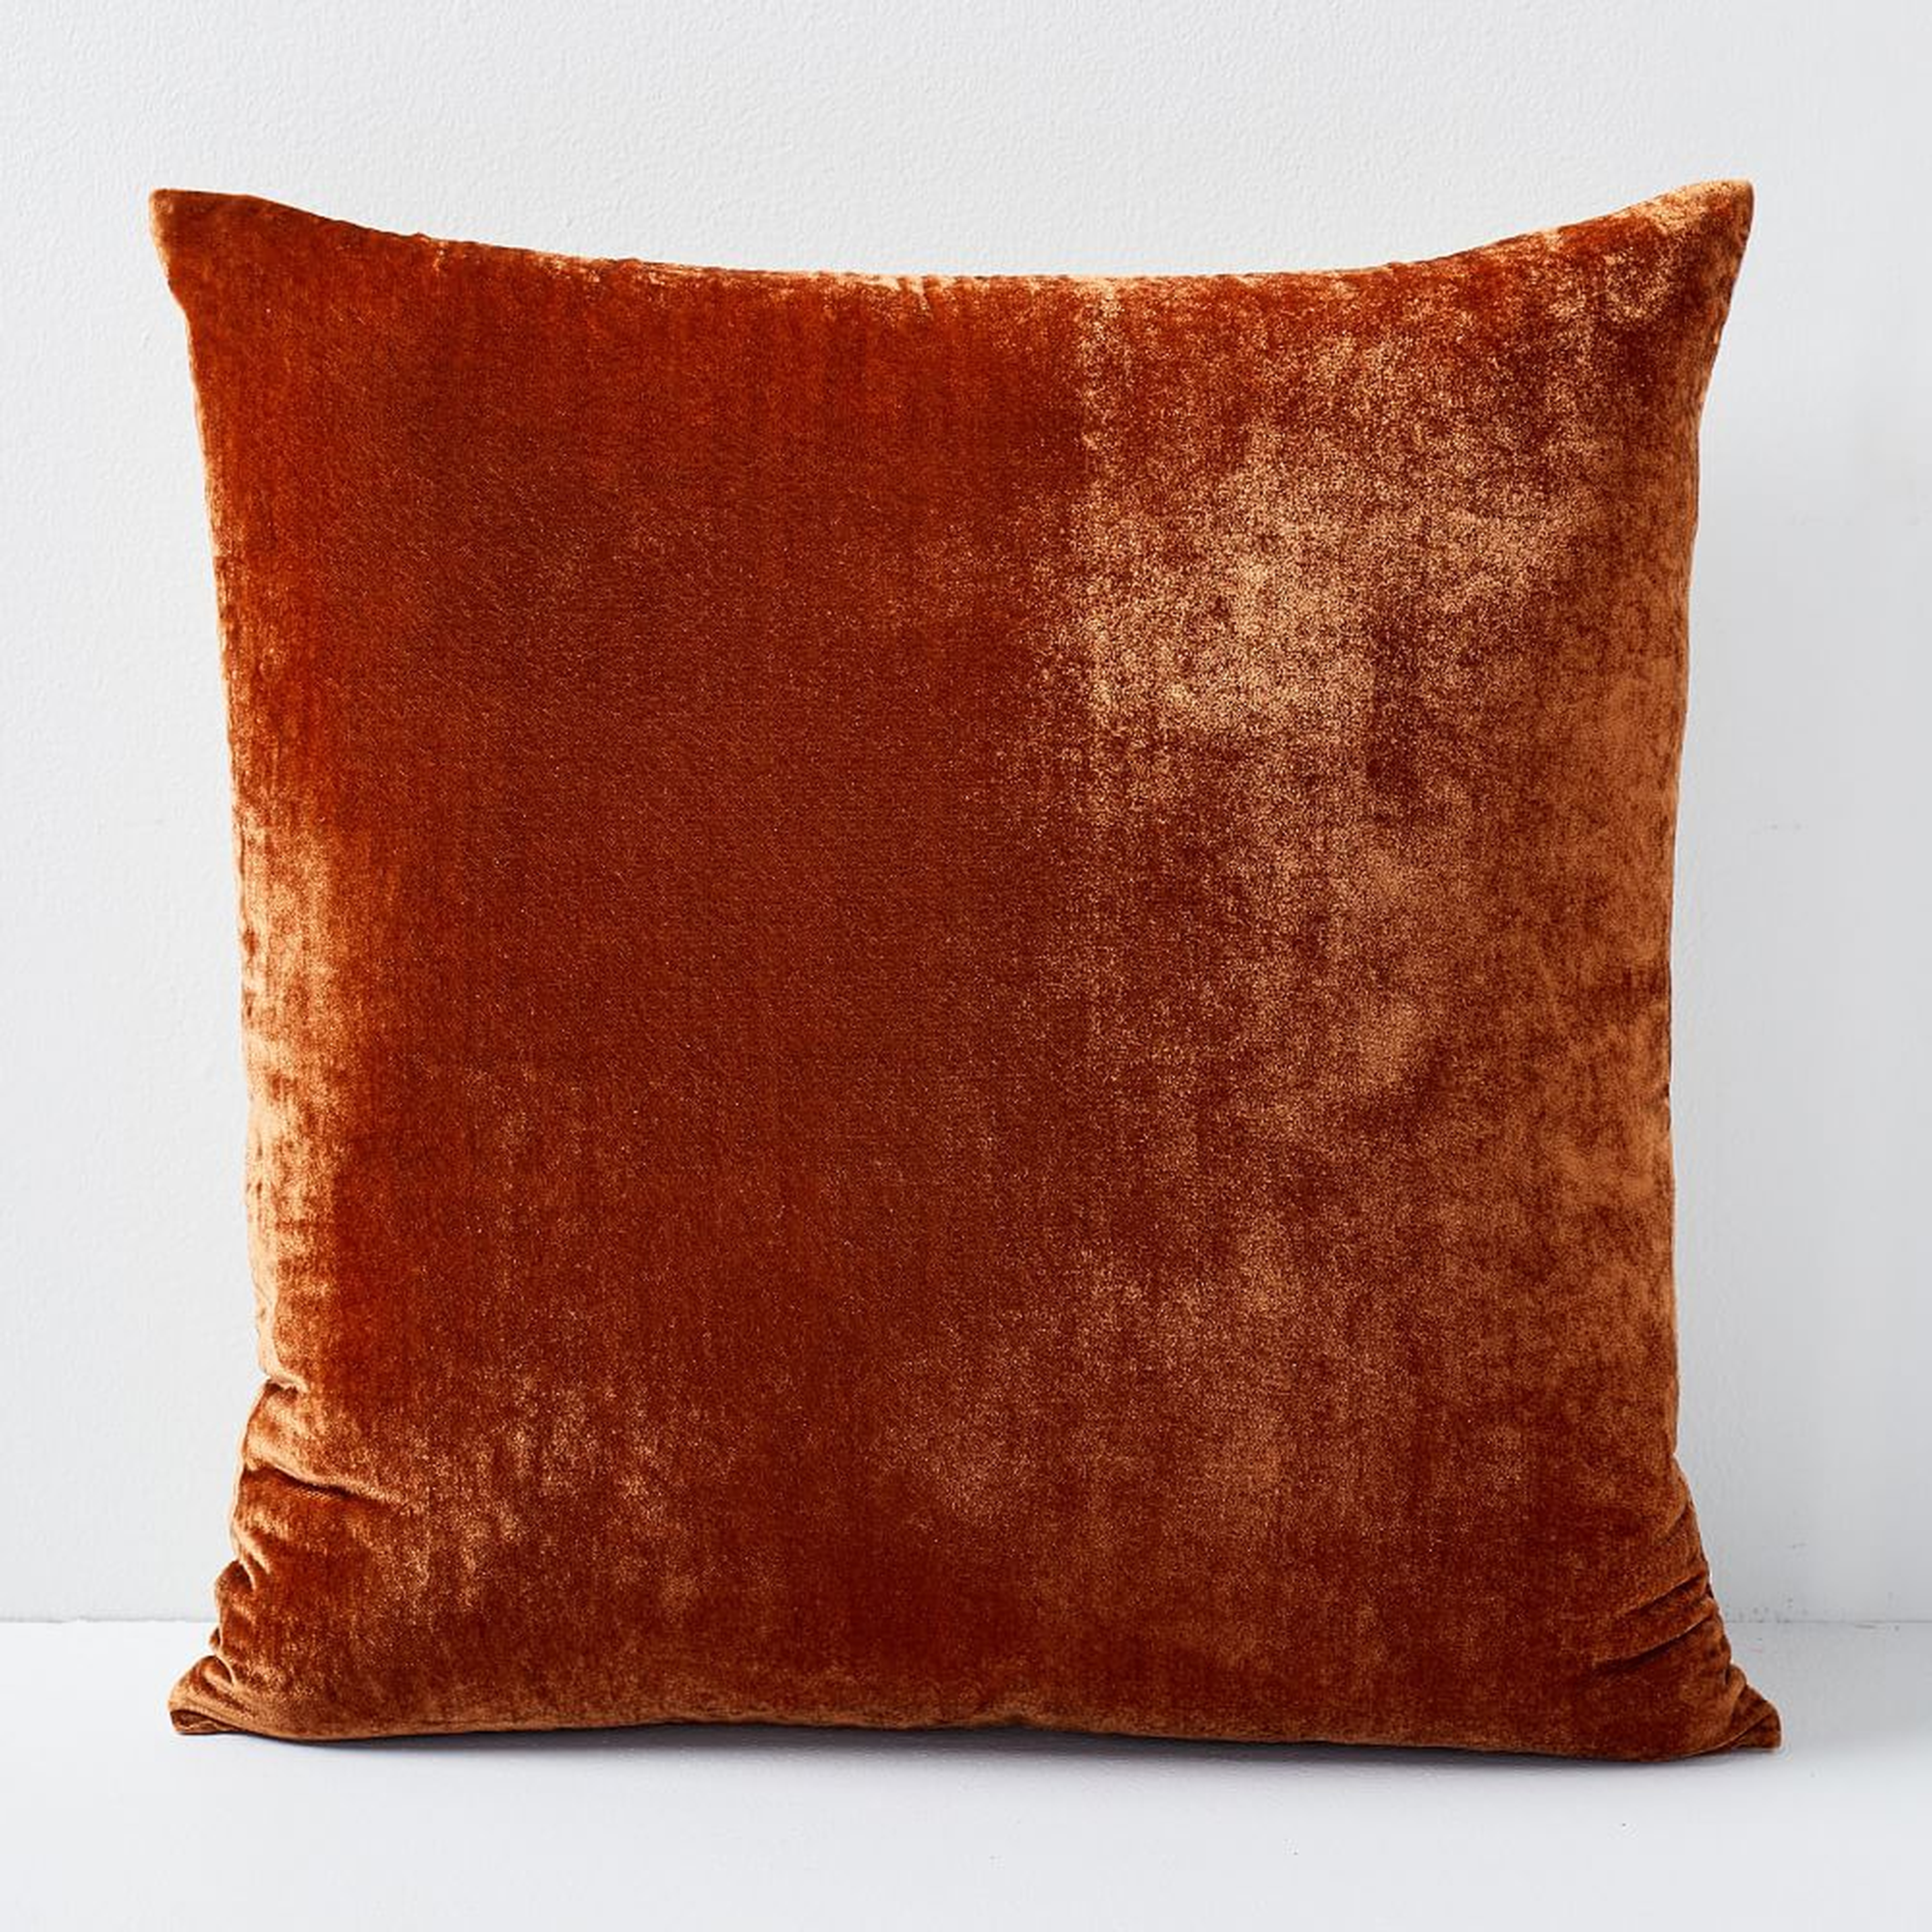 Lush Velvet Pillow Cover, 20"x20", Copper - West Elm